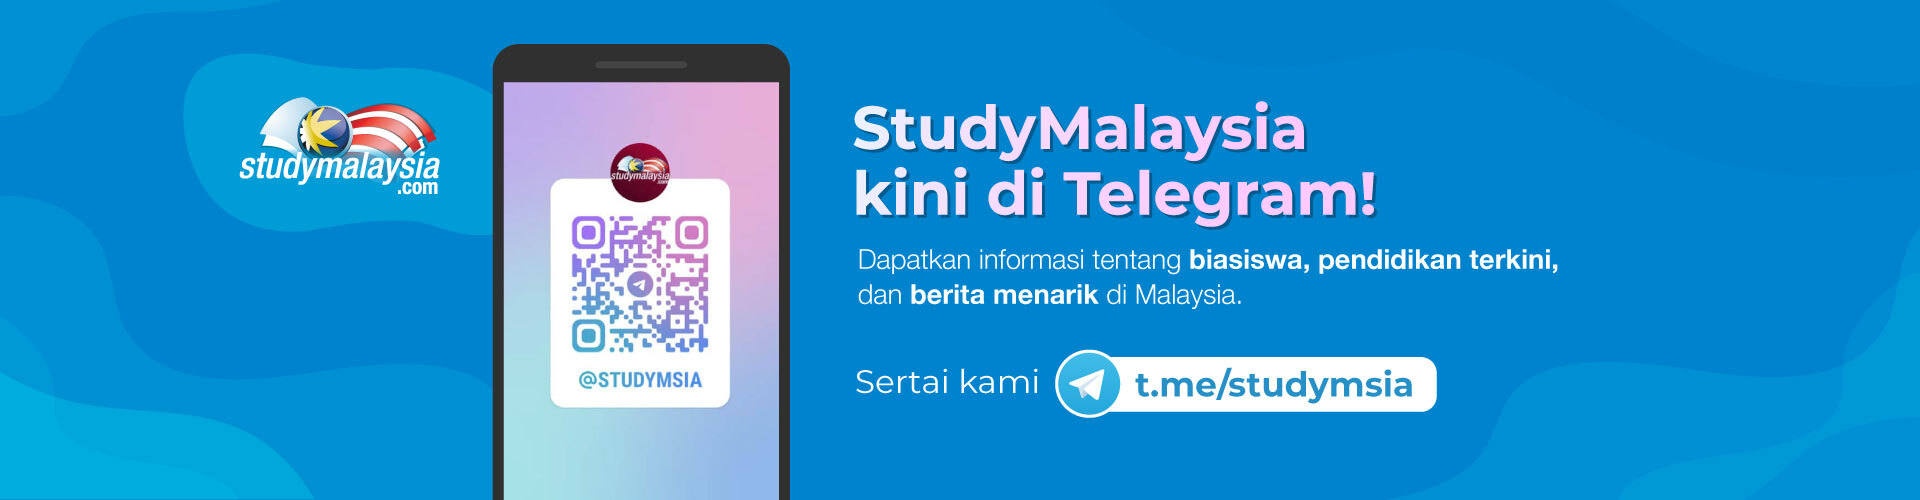 StudyMalaysia.com (SMO)